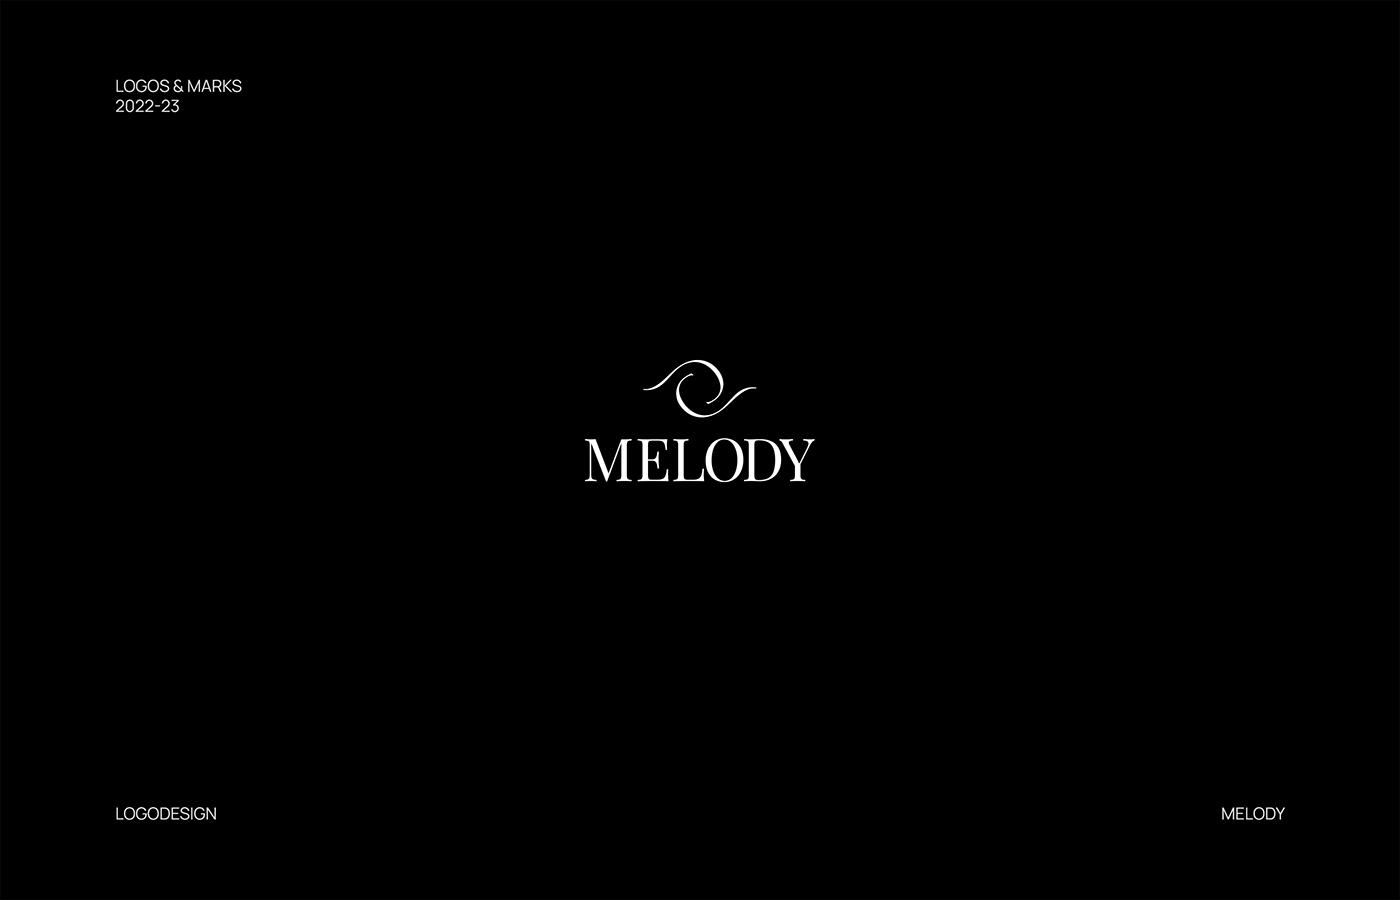 Melody - logo for women's wear brand